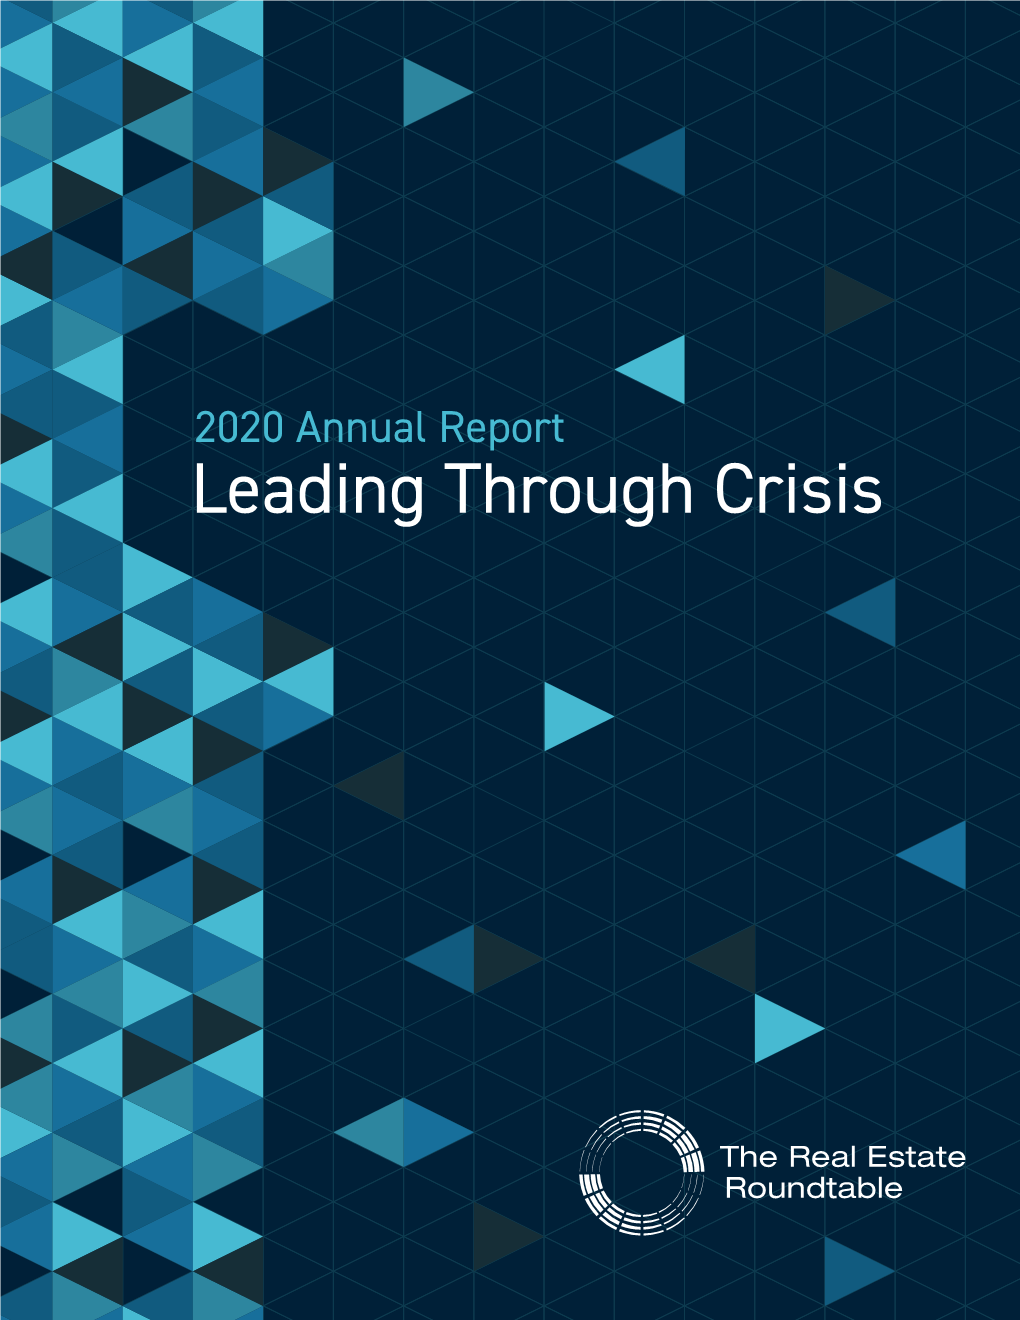 2020 Annual Report – Leading Through Crisis